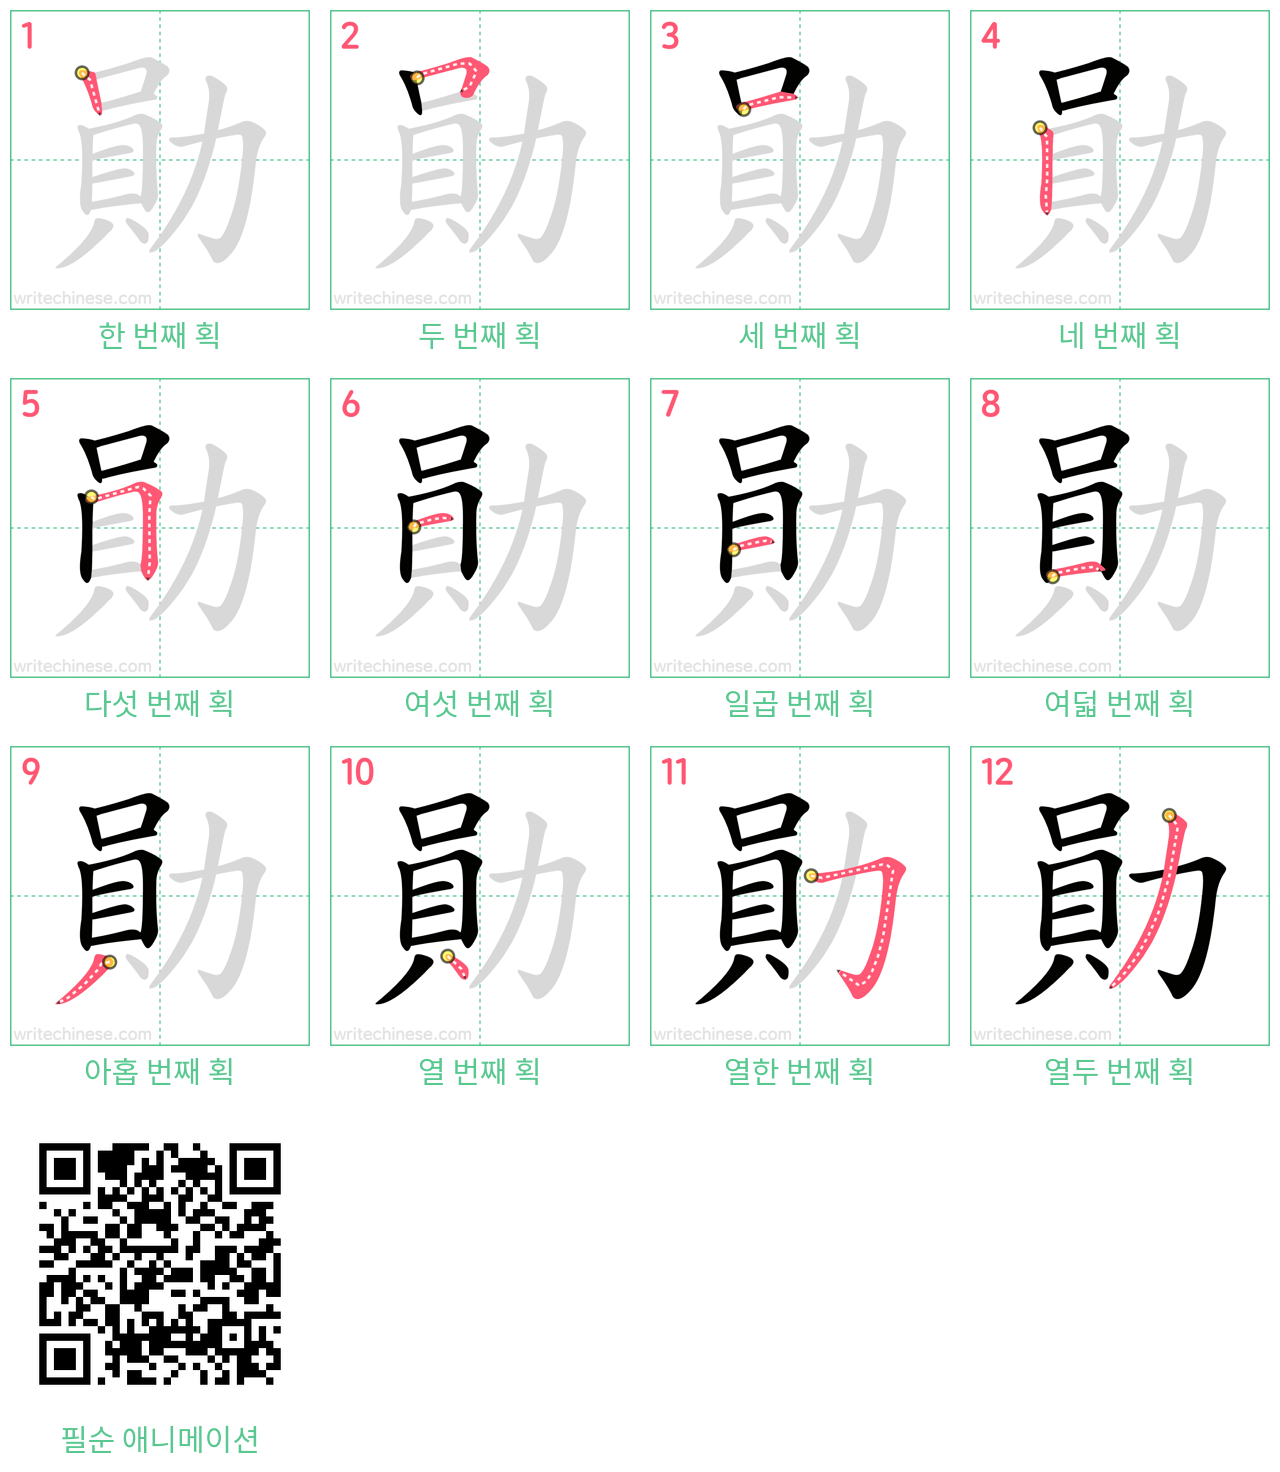 勛 step-by-step stroke order diagrams